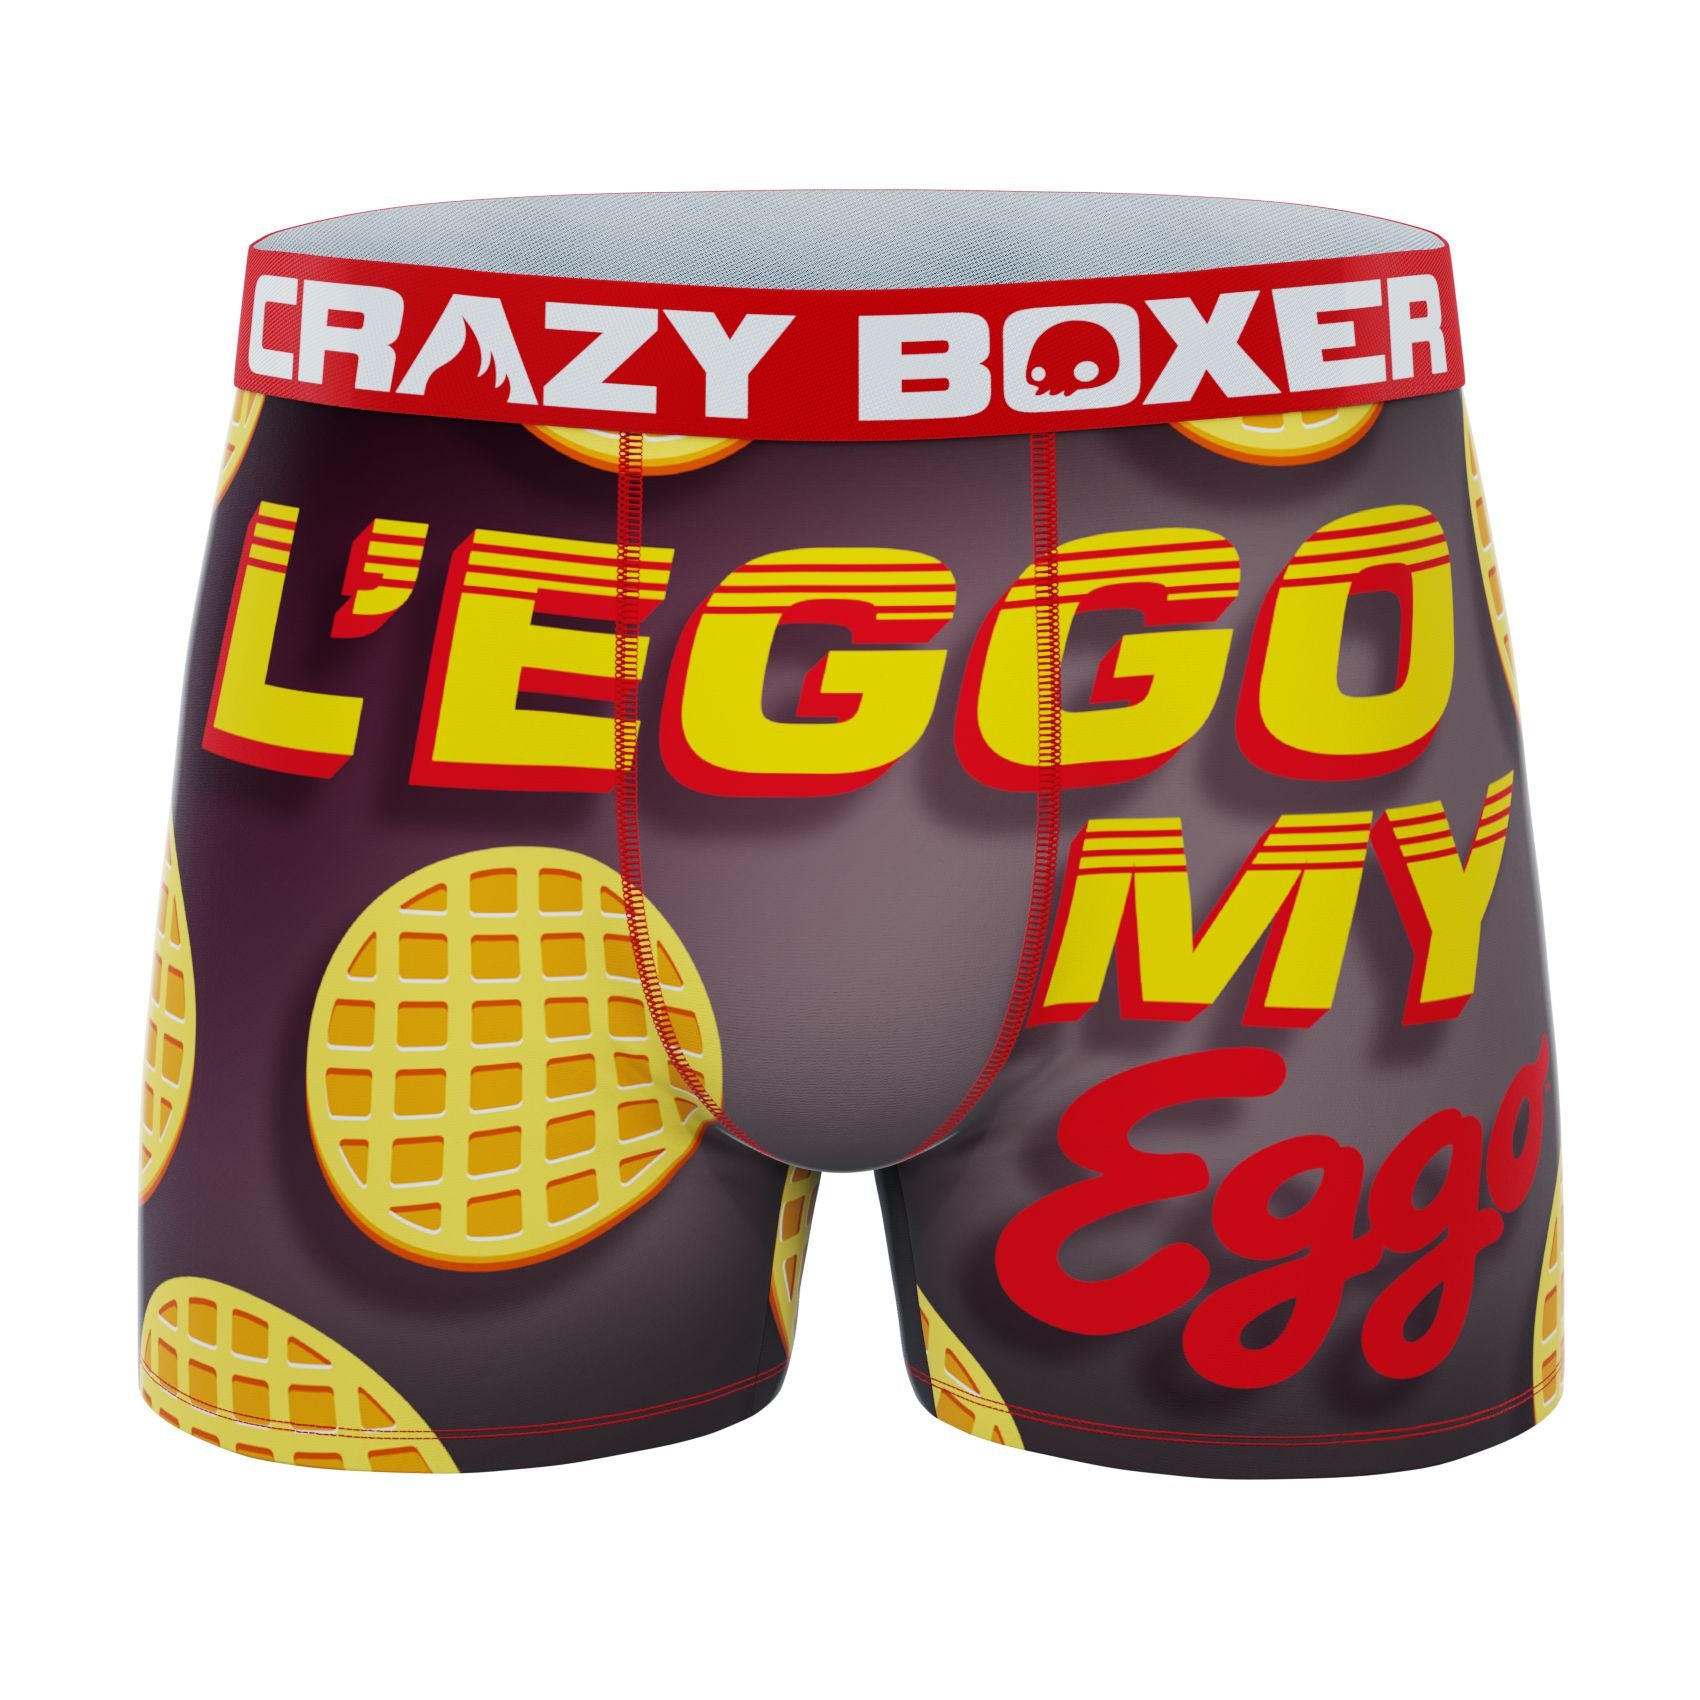 CRAZYBOXER Kellogg's Eggo Men's Boxer Briefs (Pack 2)